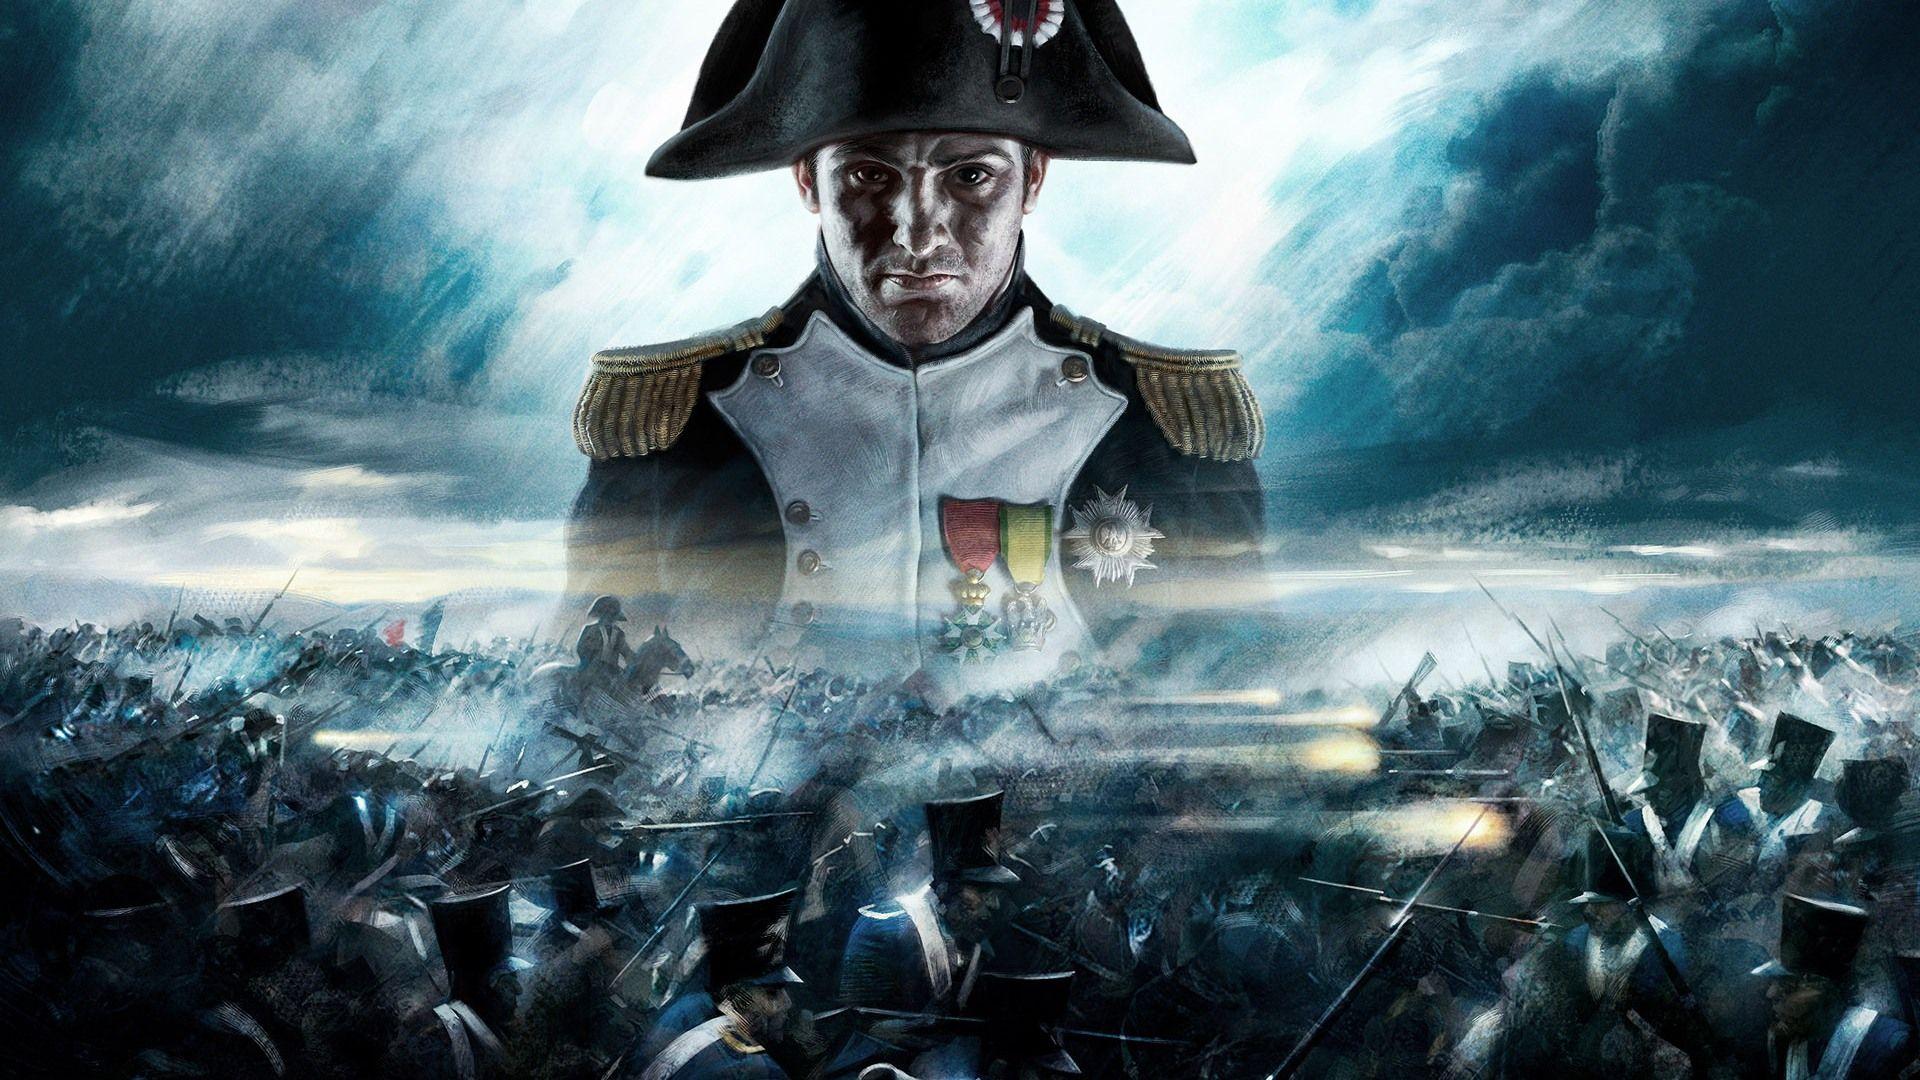 Empire: Total War HD wallpaper Wallpaper Download